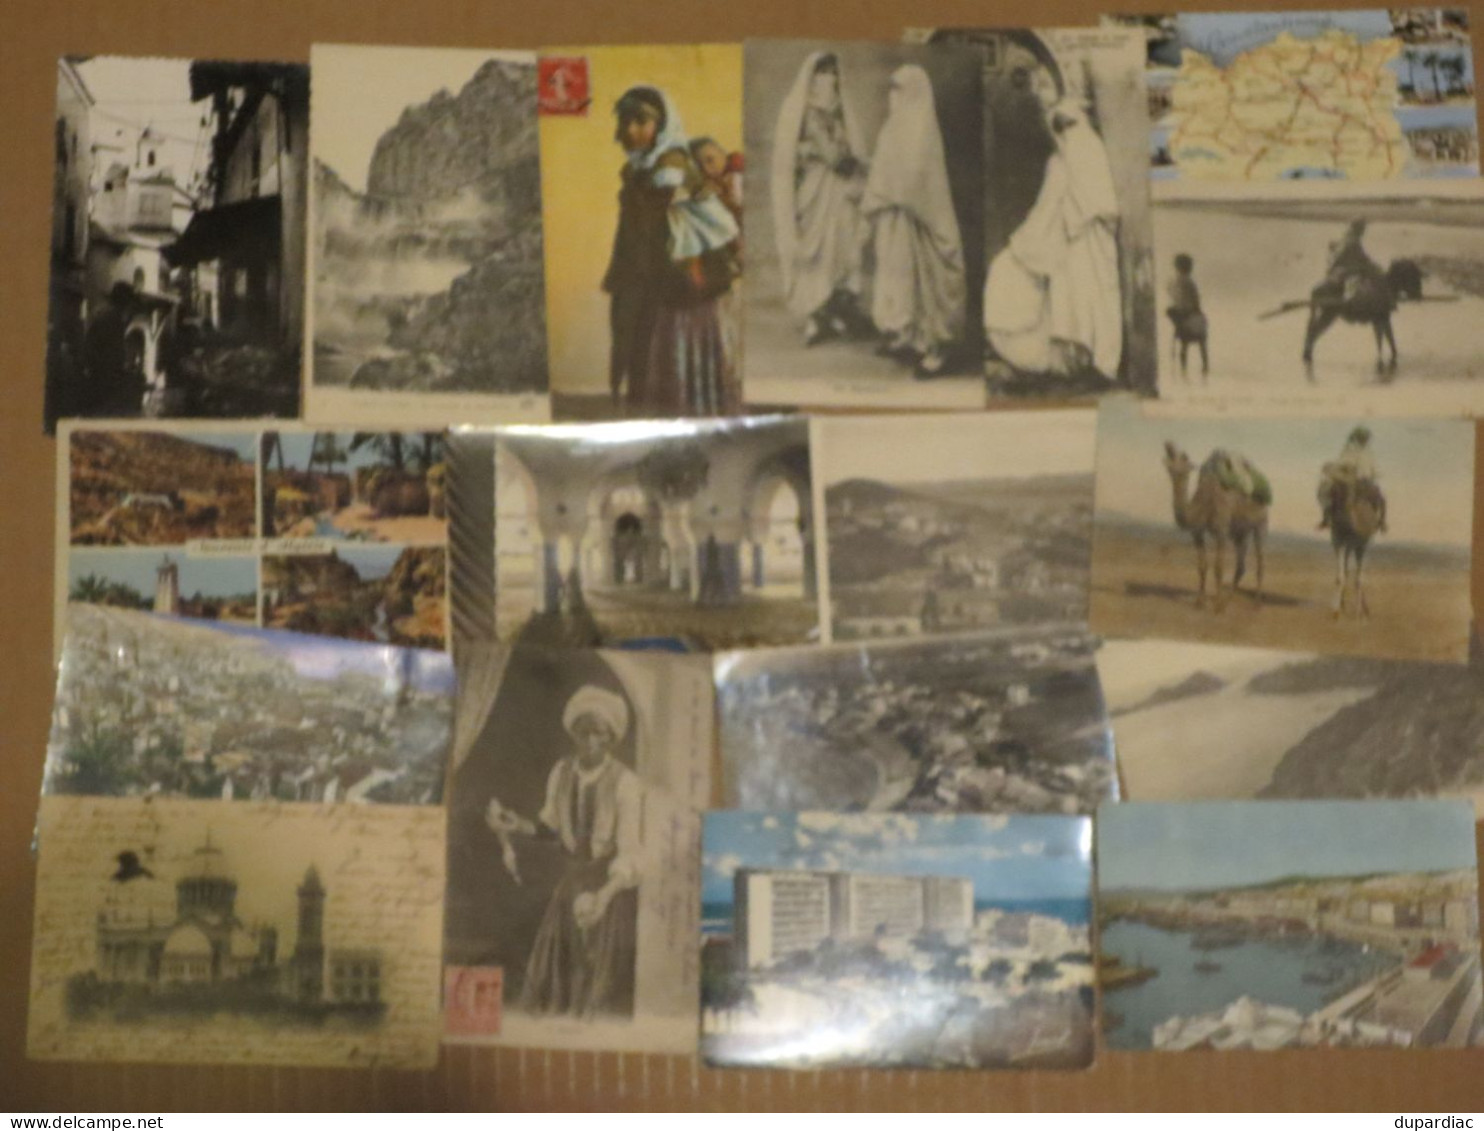 ALGERIE : lot de 320 cartes postales 9 x 14 cm.